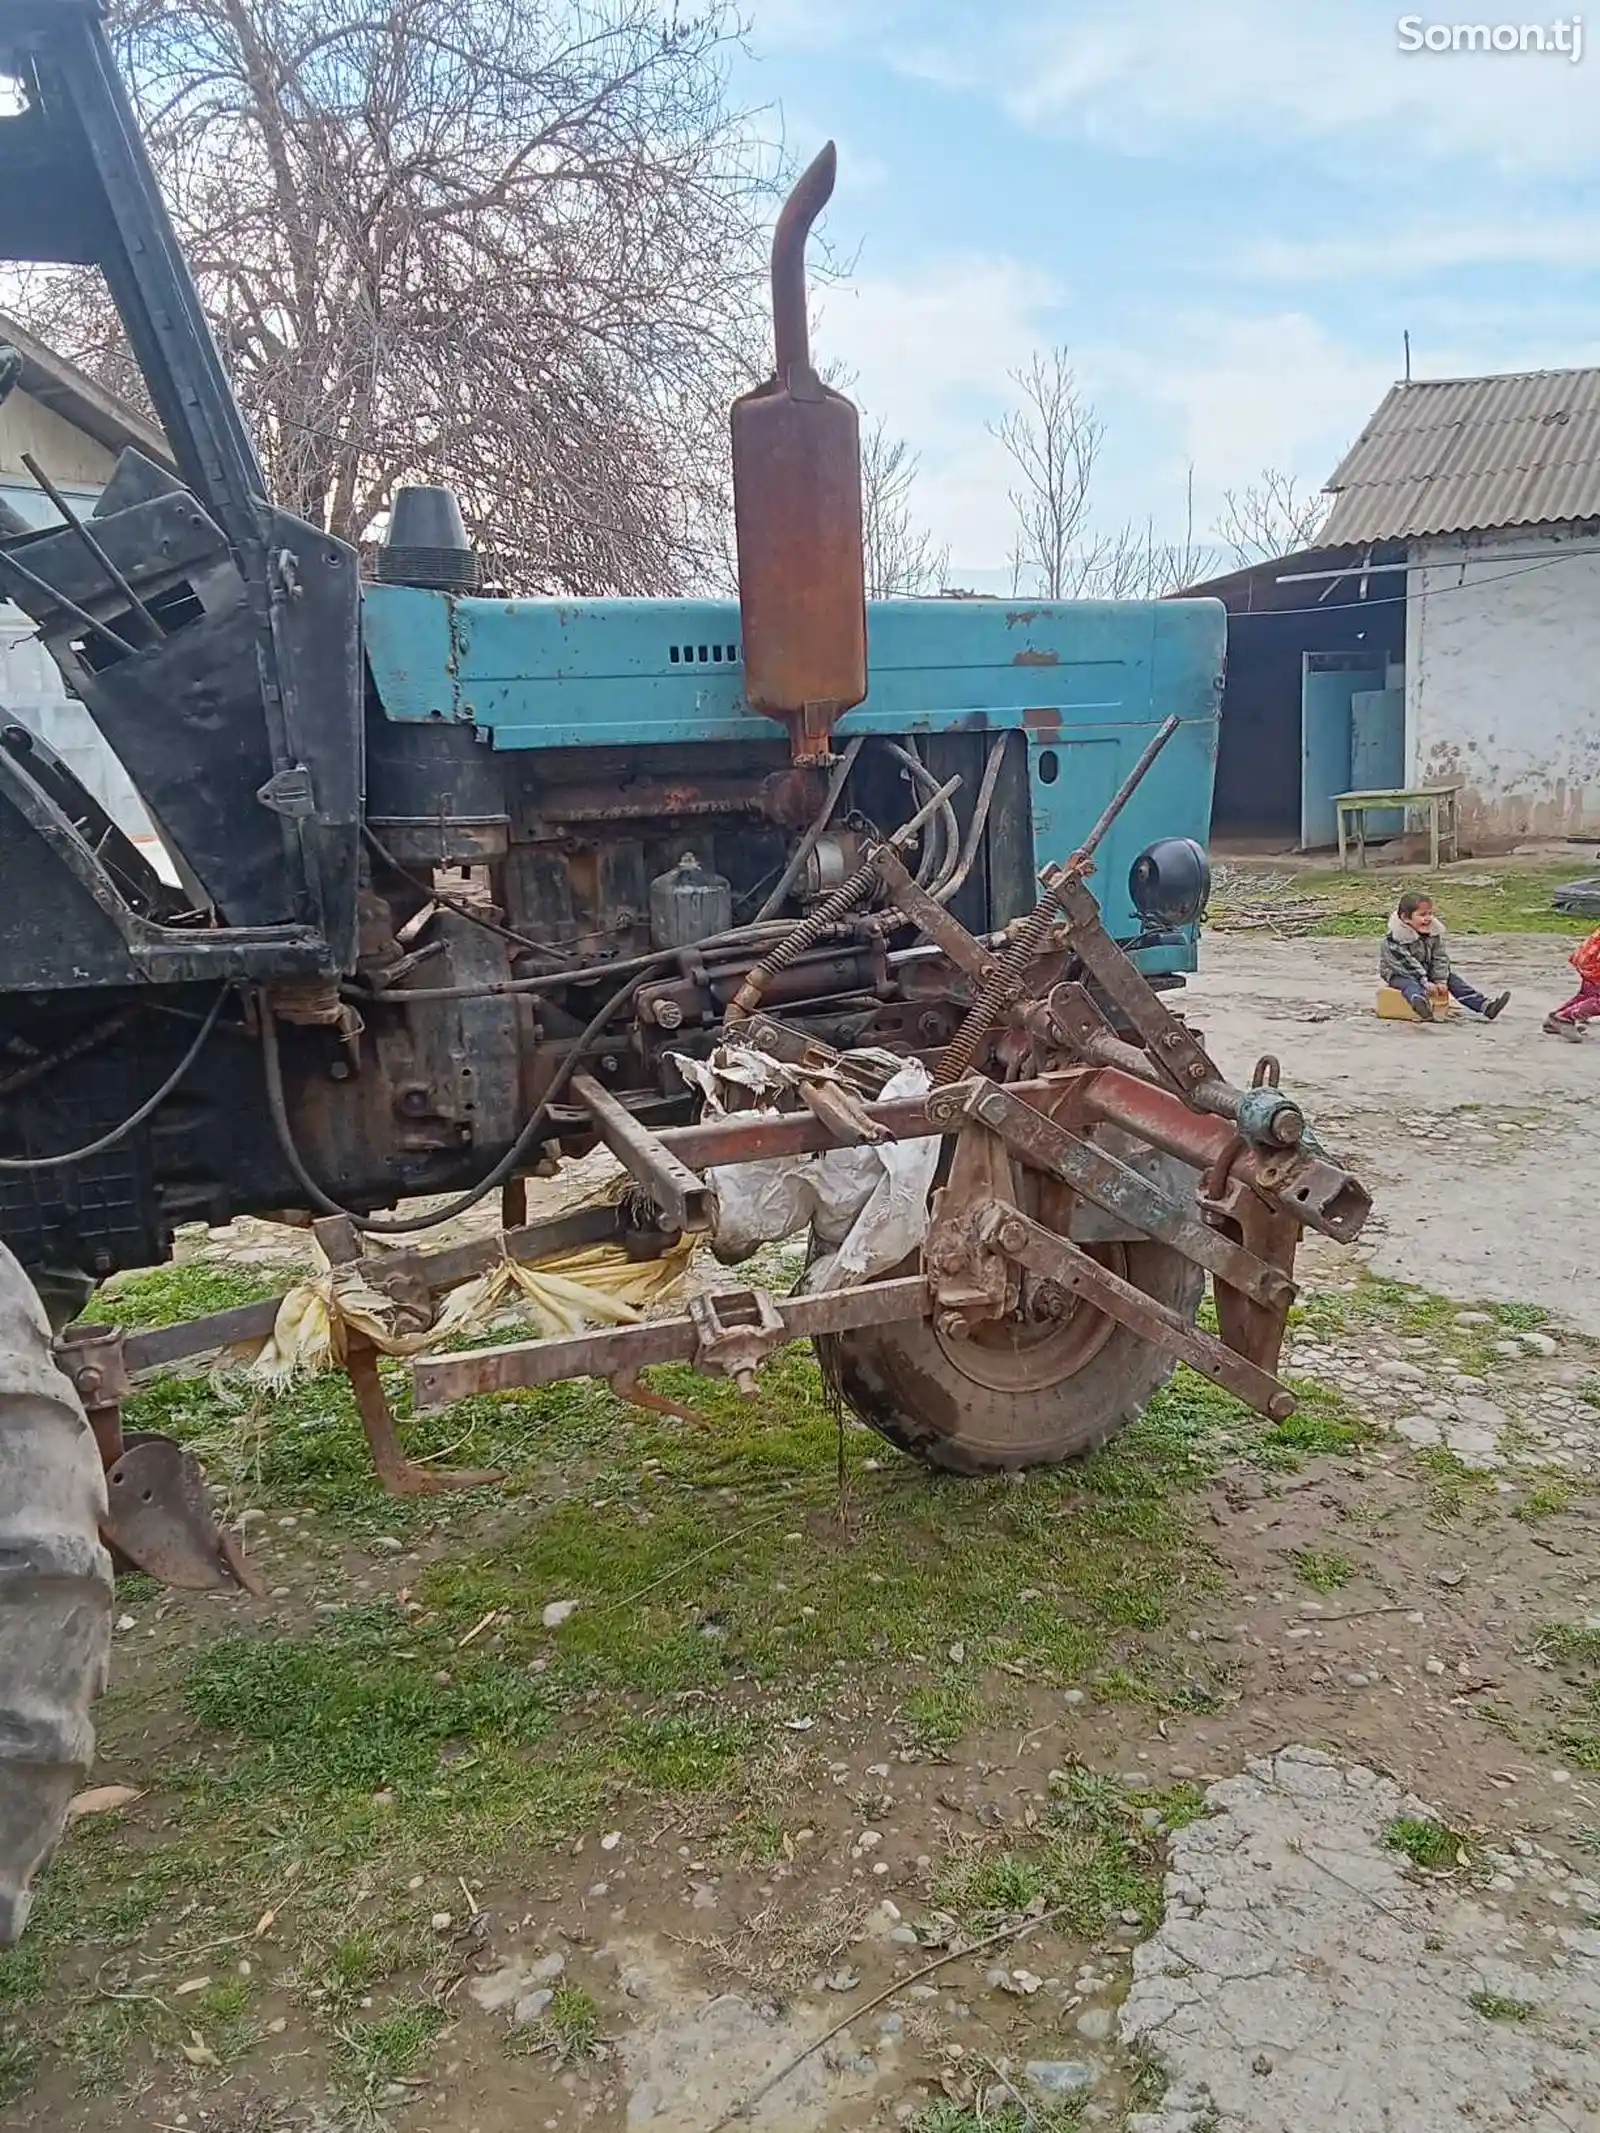 Трактор МТЗ-80-4